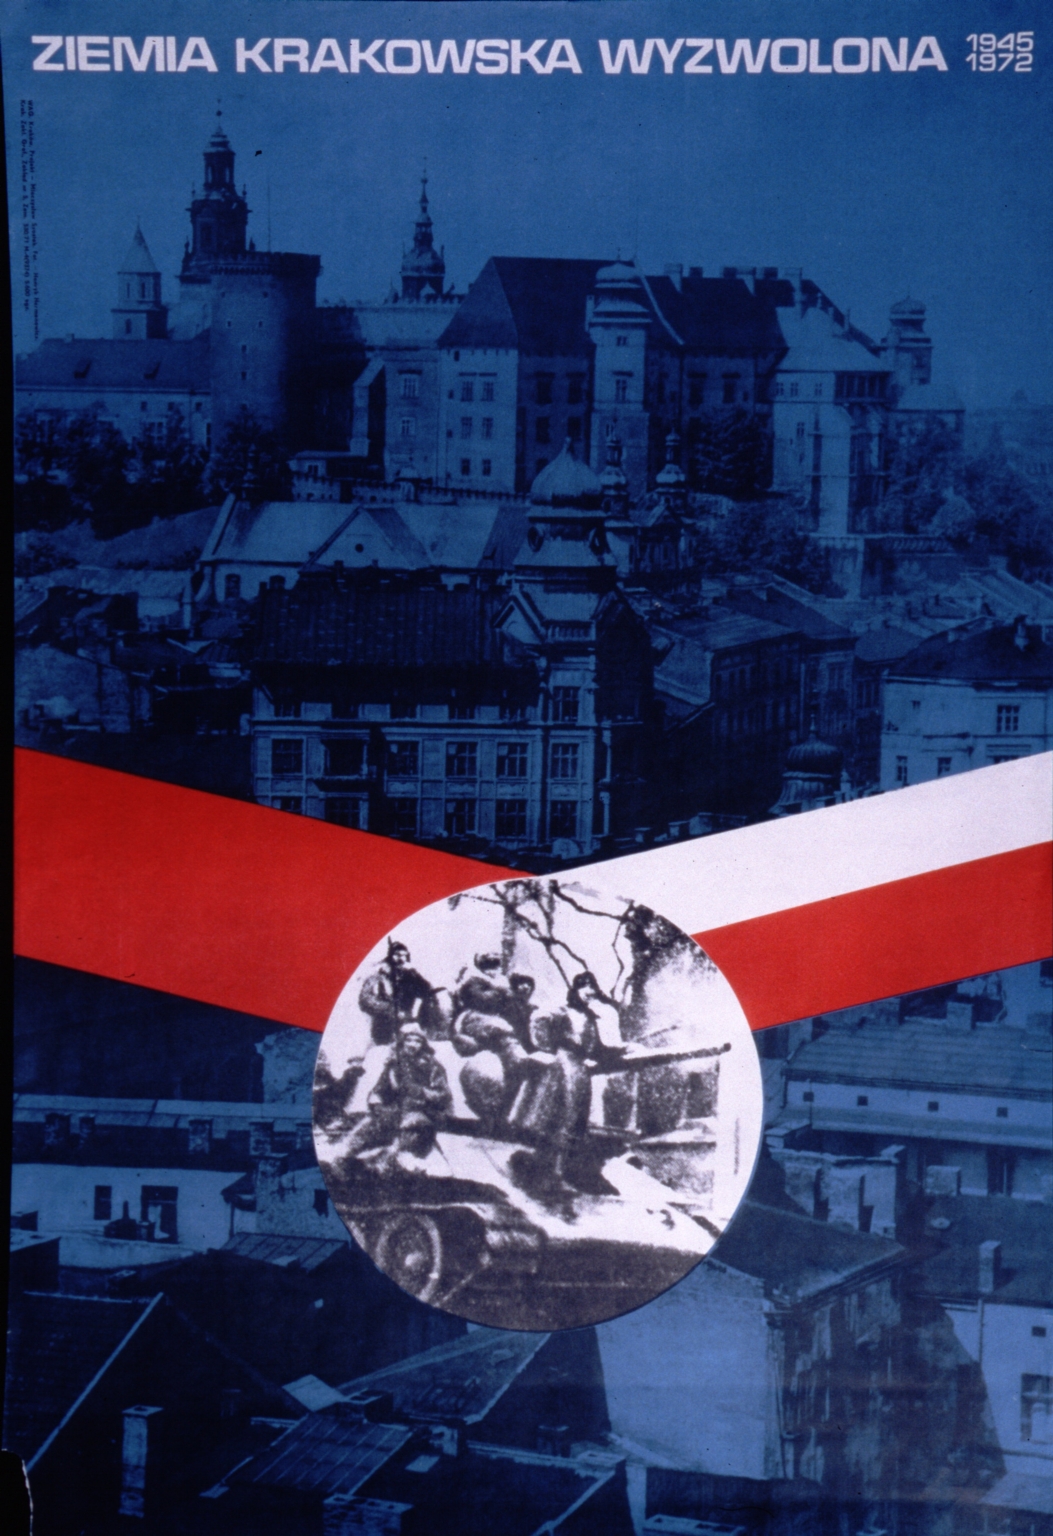 Ziemia krakowska wyzwolona, 1945-1972